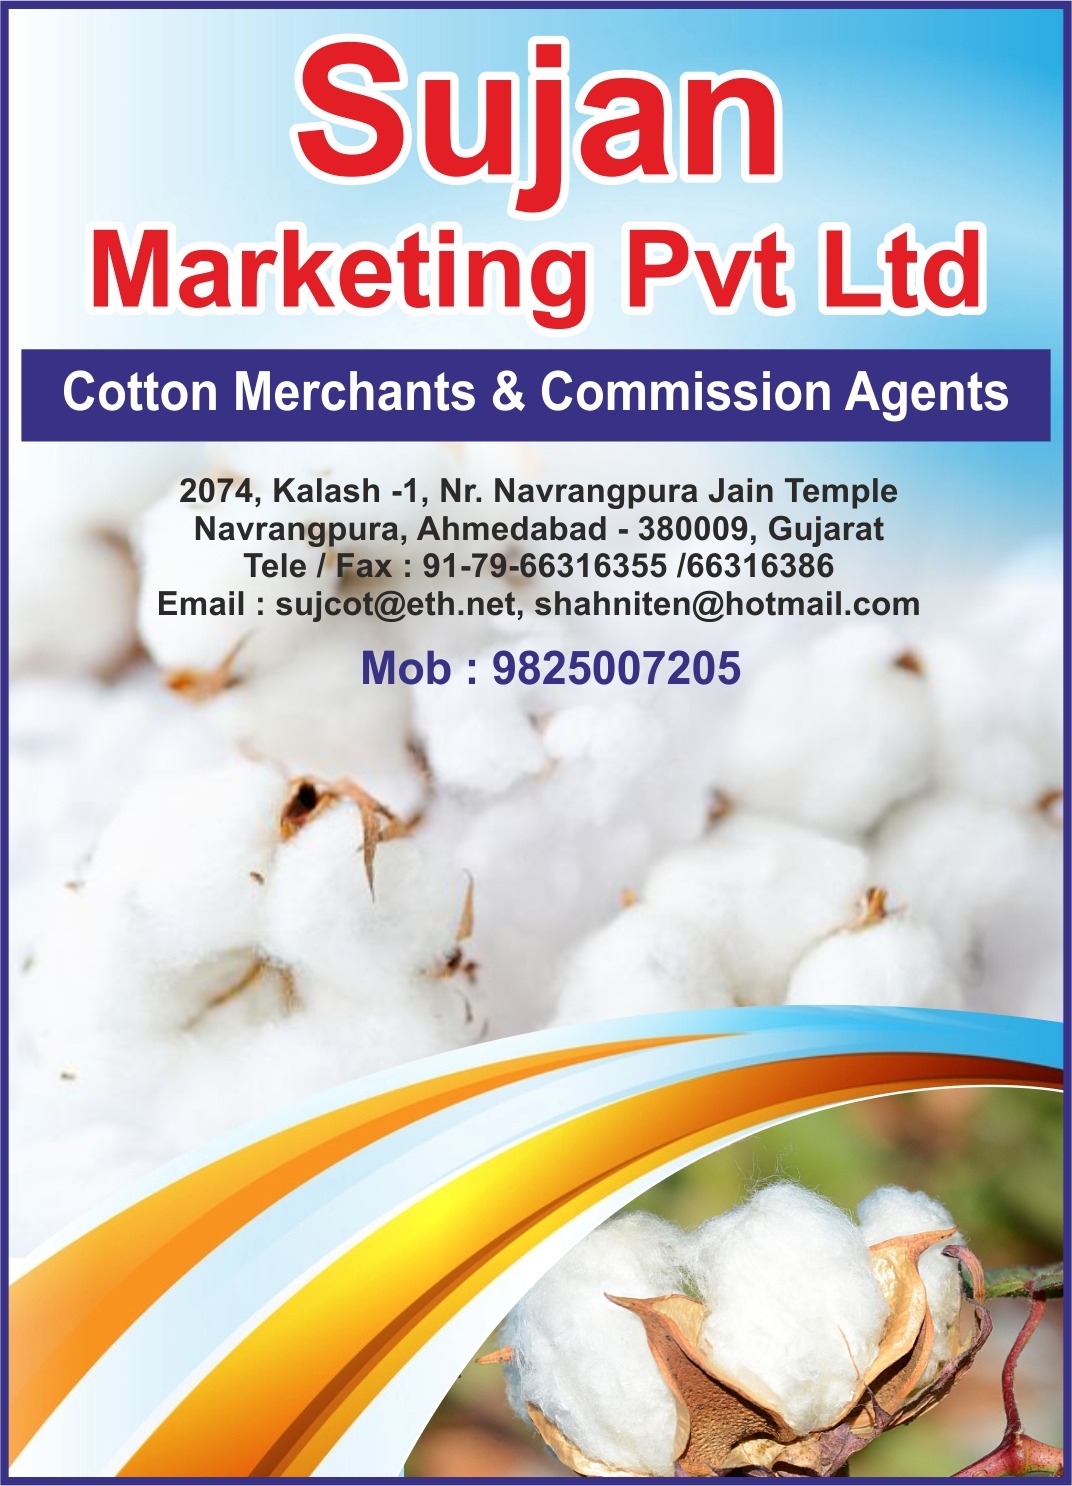 Sujan Marketing Pvt. Ltd.